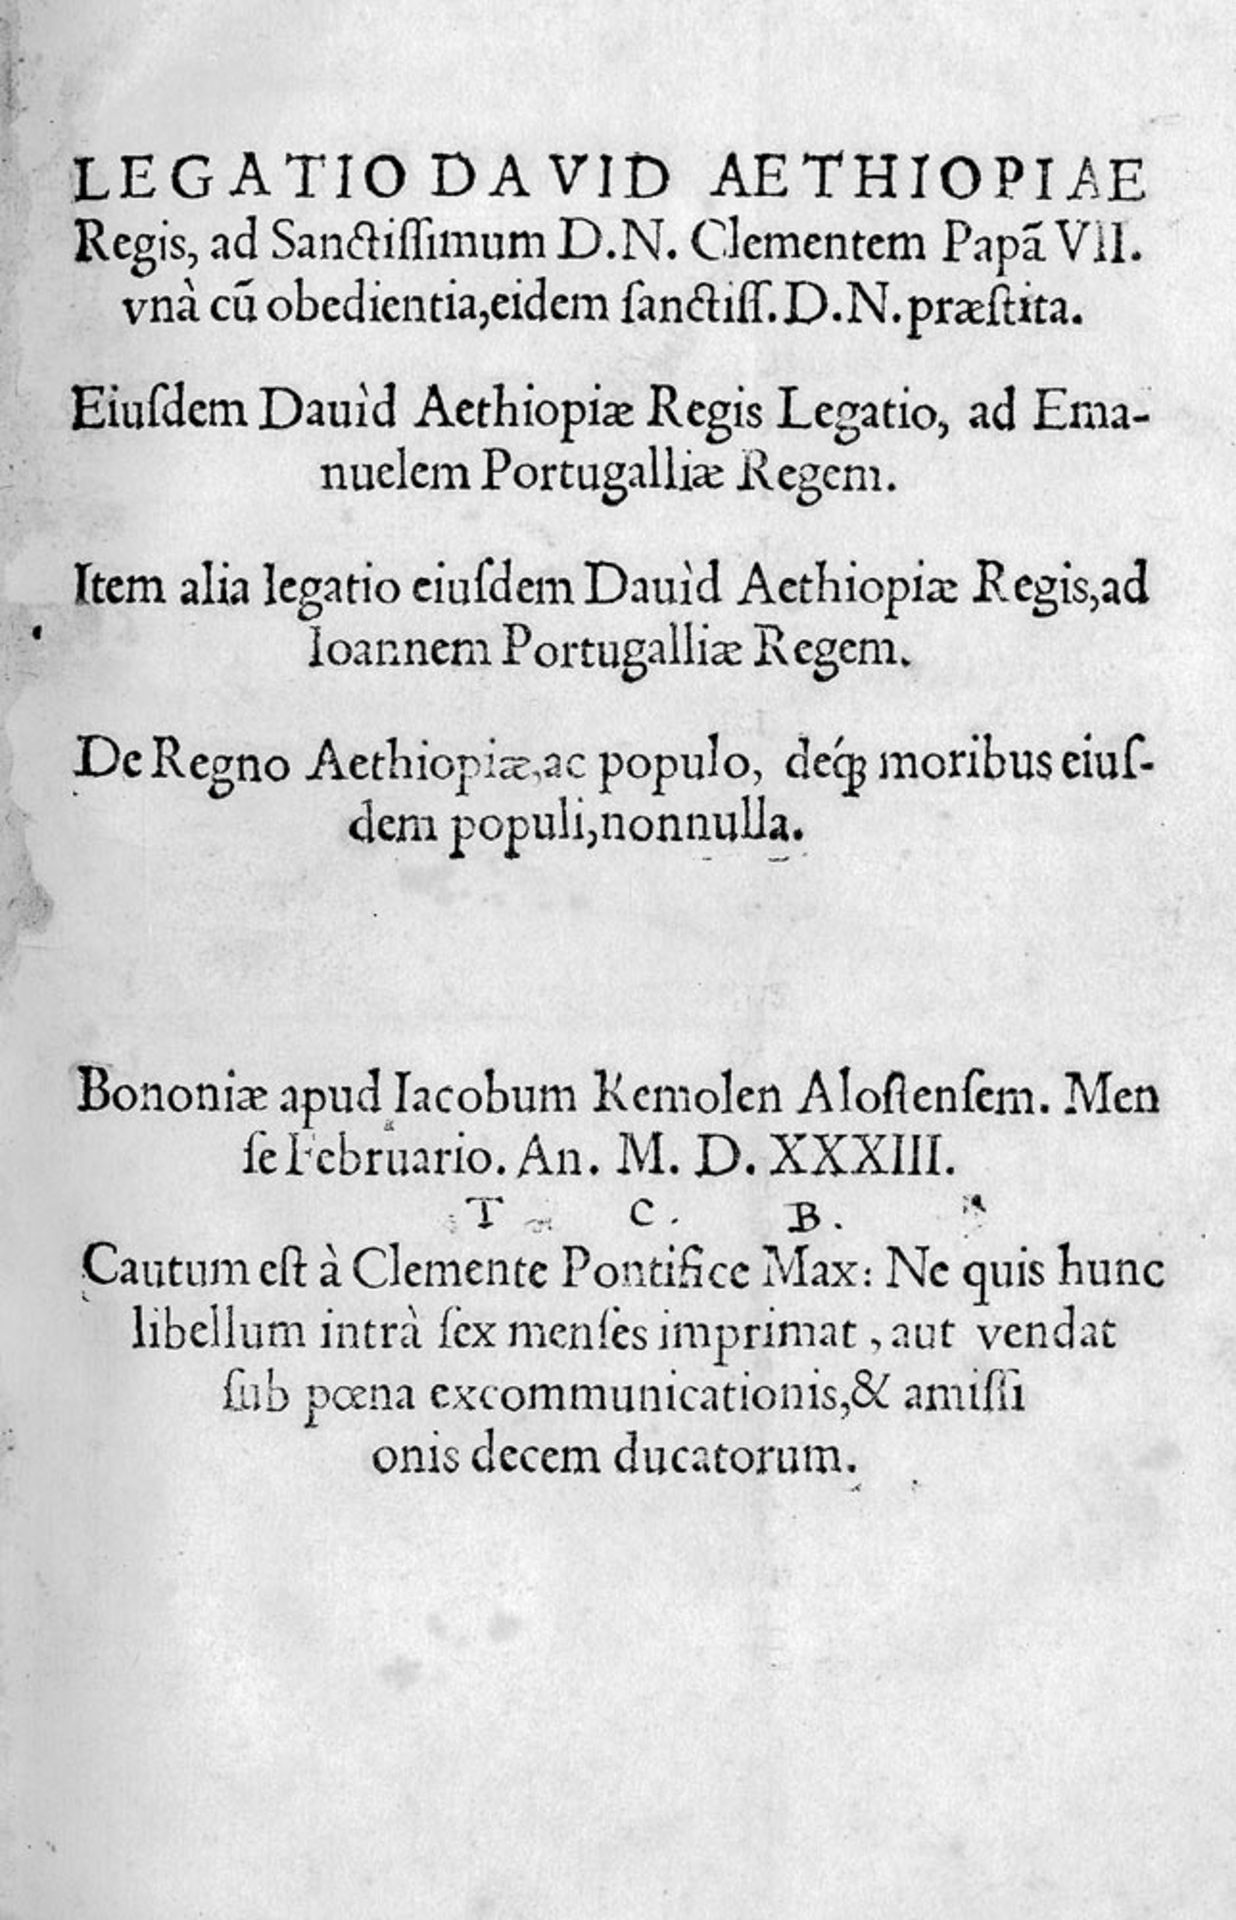 Legatio David Aethiopiae regis und Lebna Dengel Dawid II.: ad Sanctissimum D. N. Clementem Papam